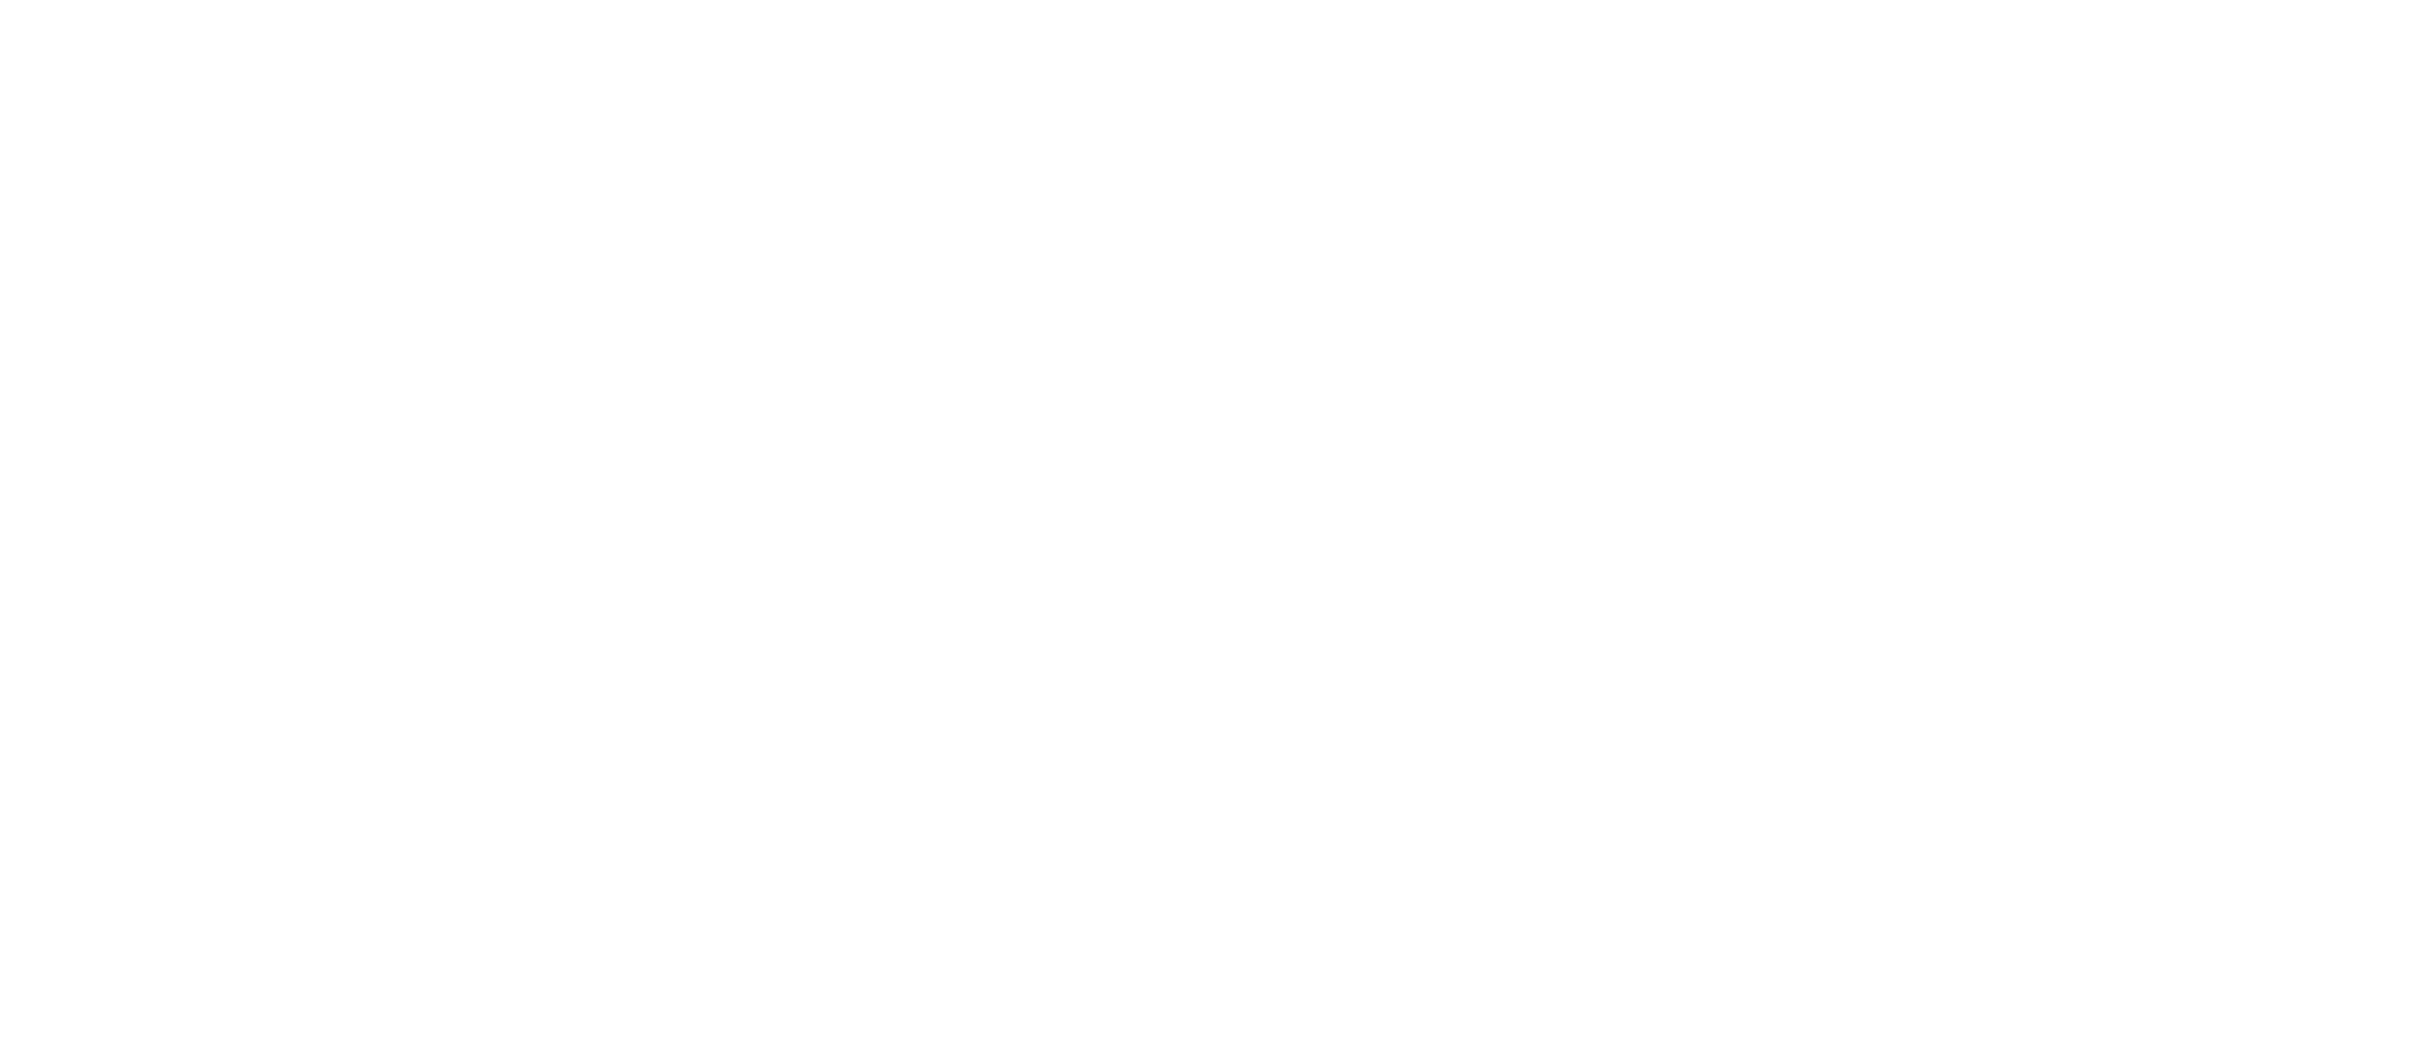 2º Festival de Innovación Cívica